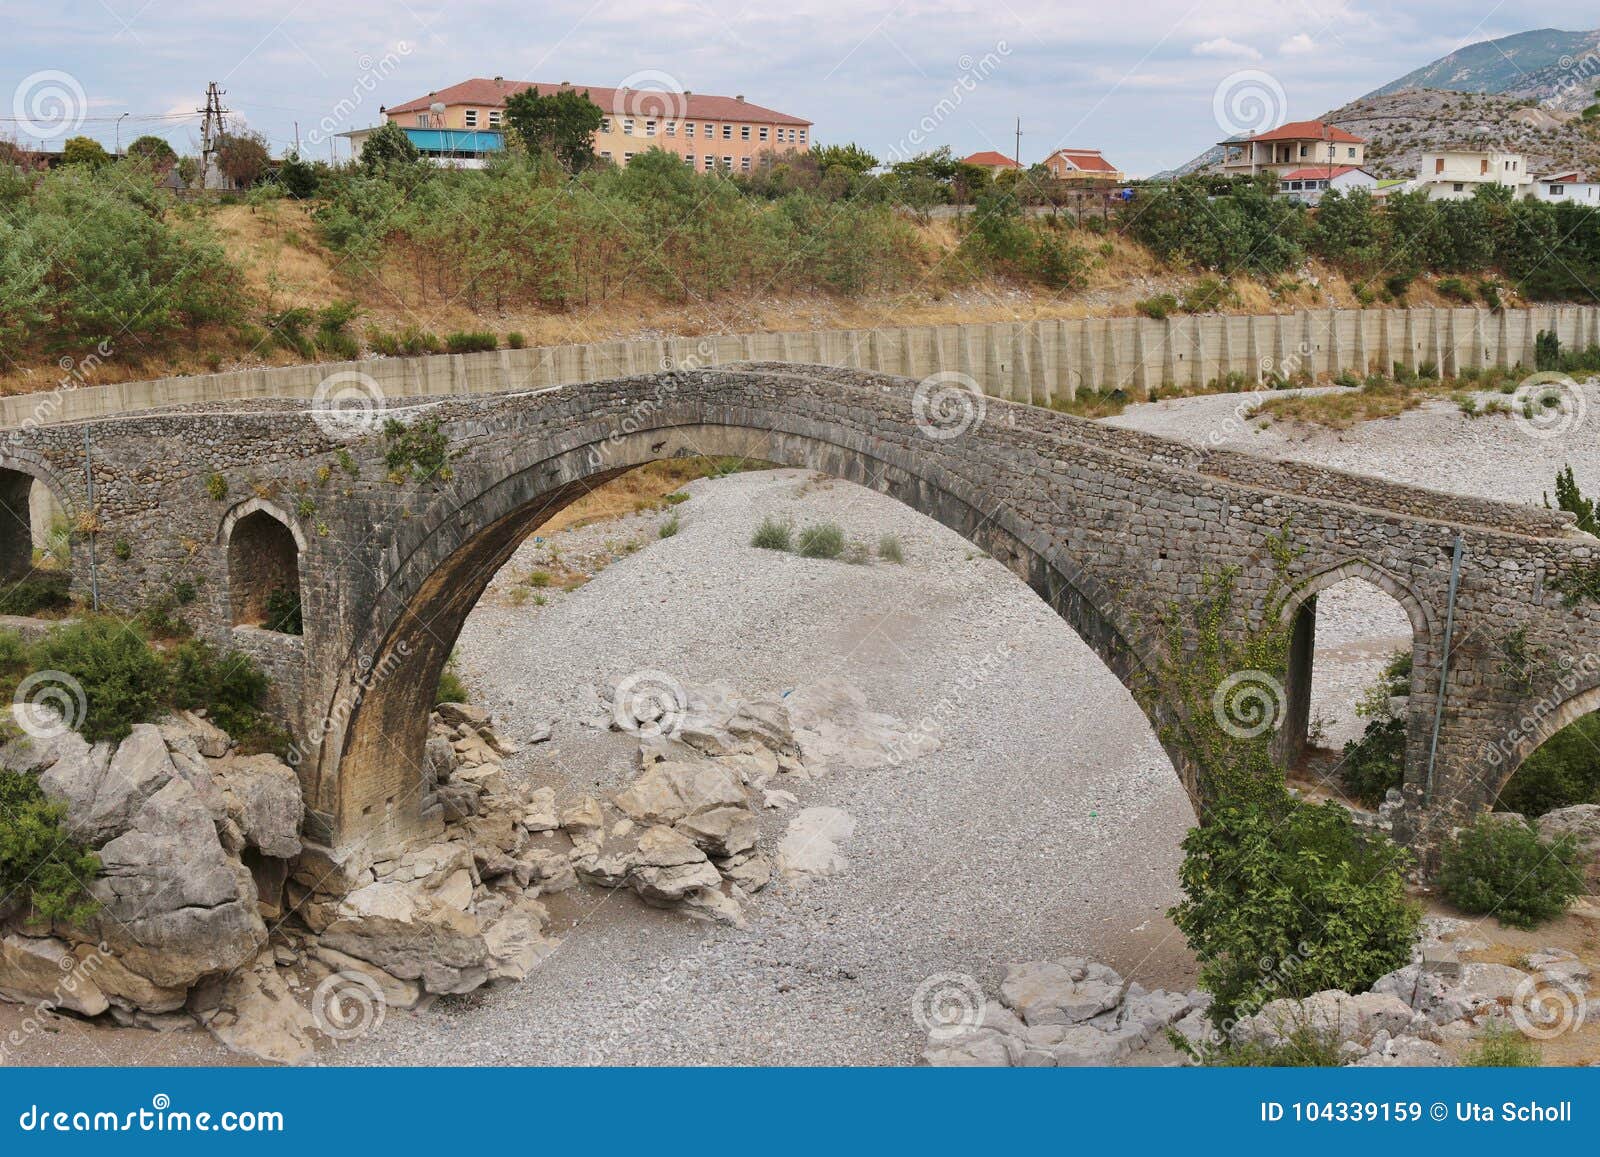 the famous mesi bridge in mes, albania.